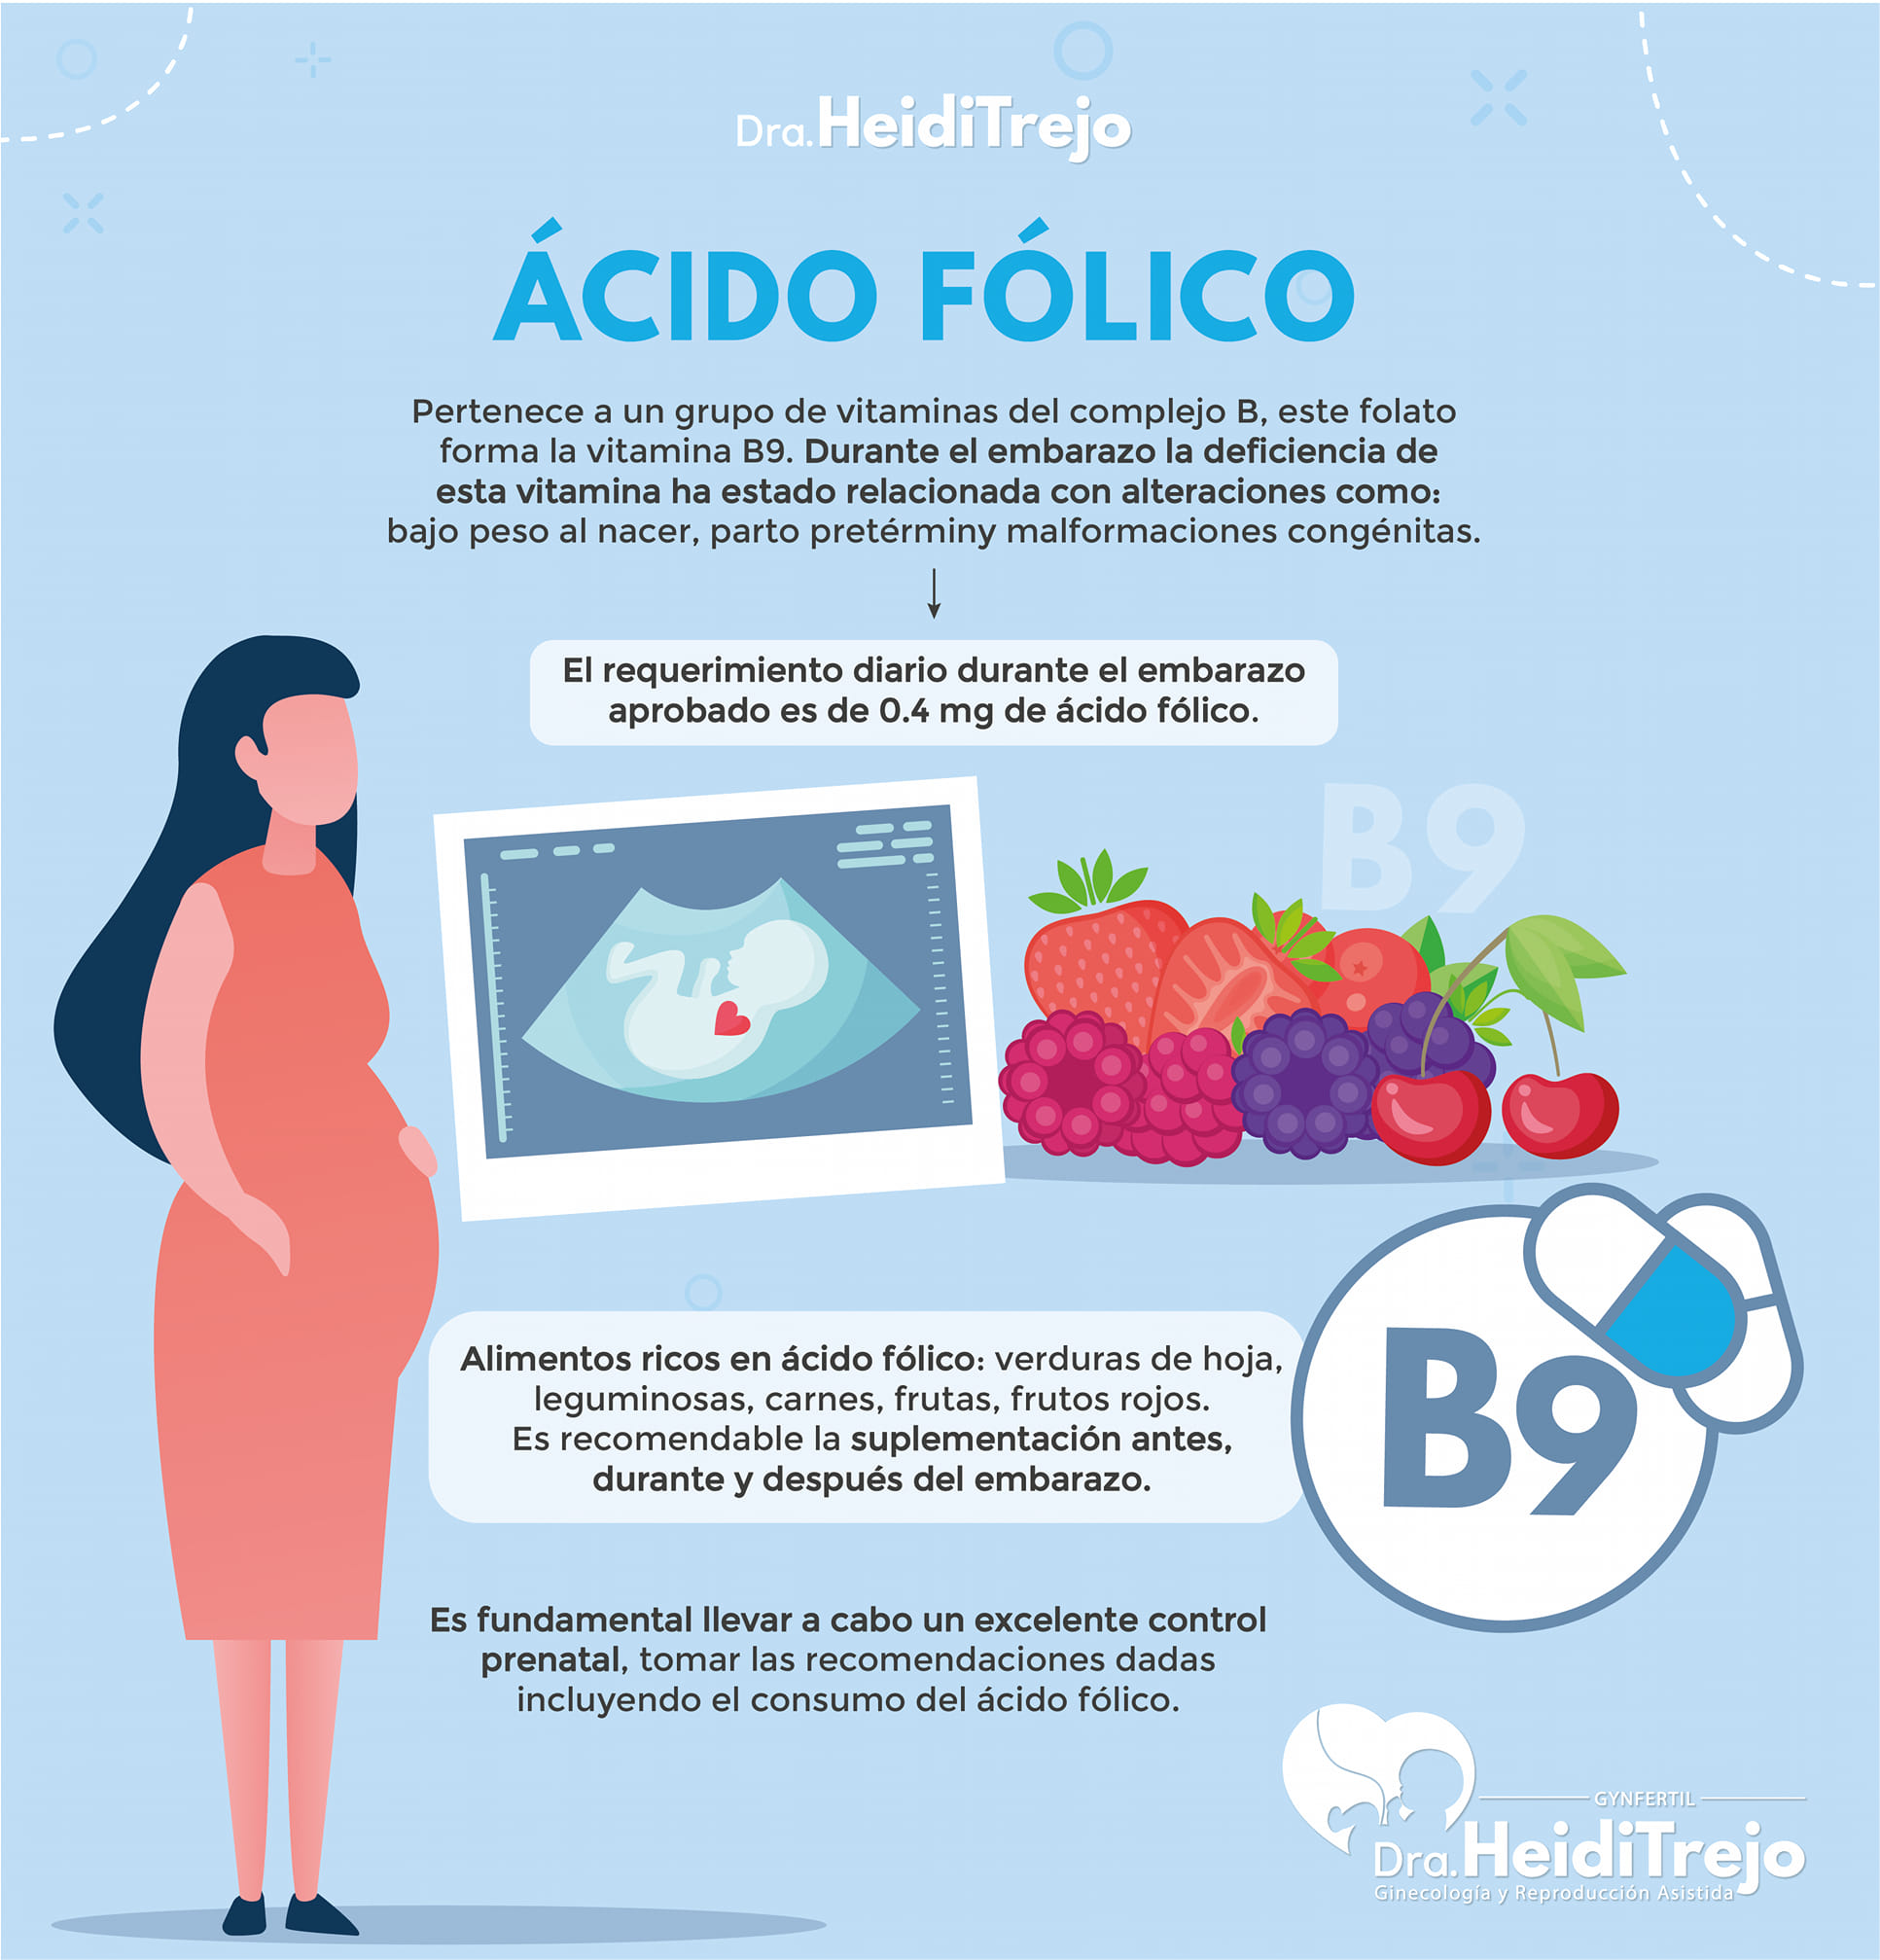 Acido folico en el embarazo